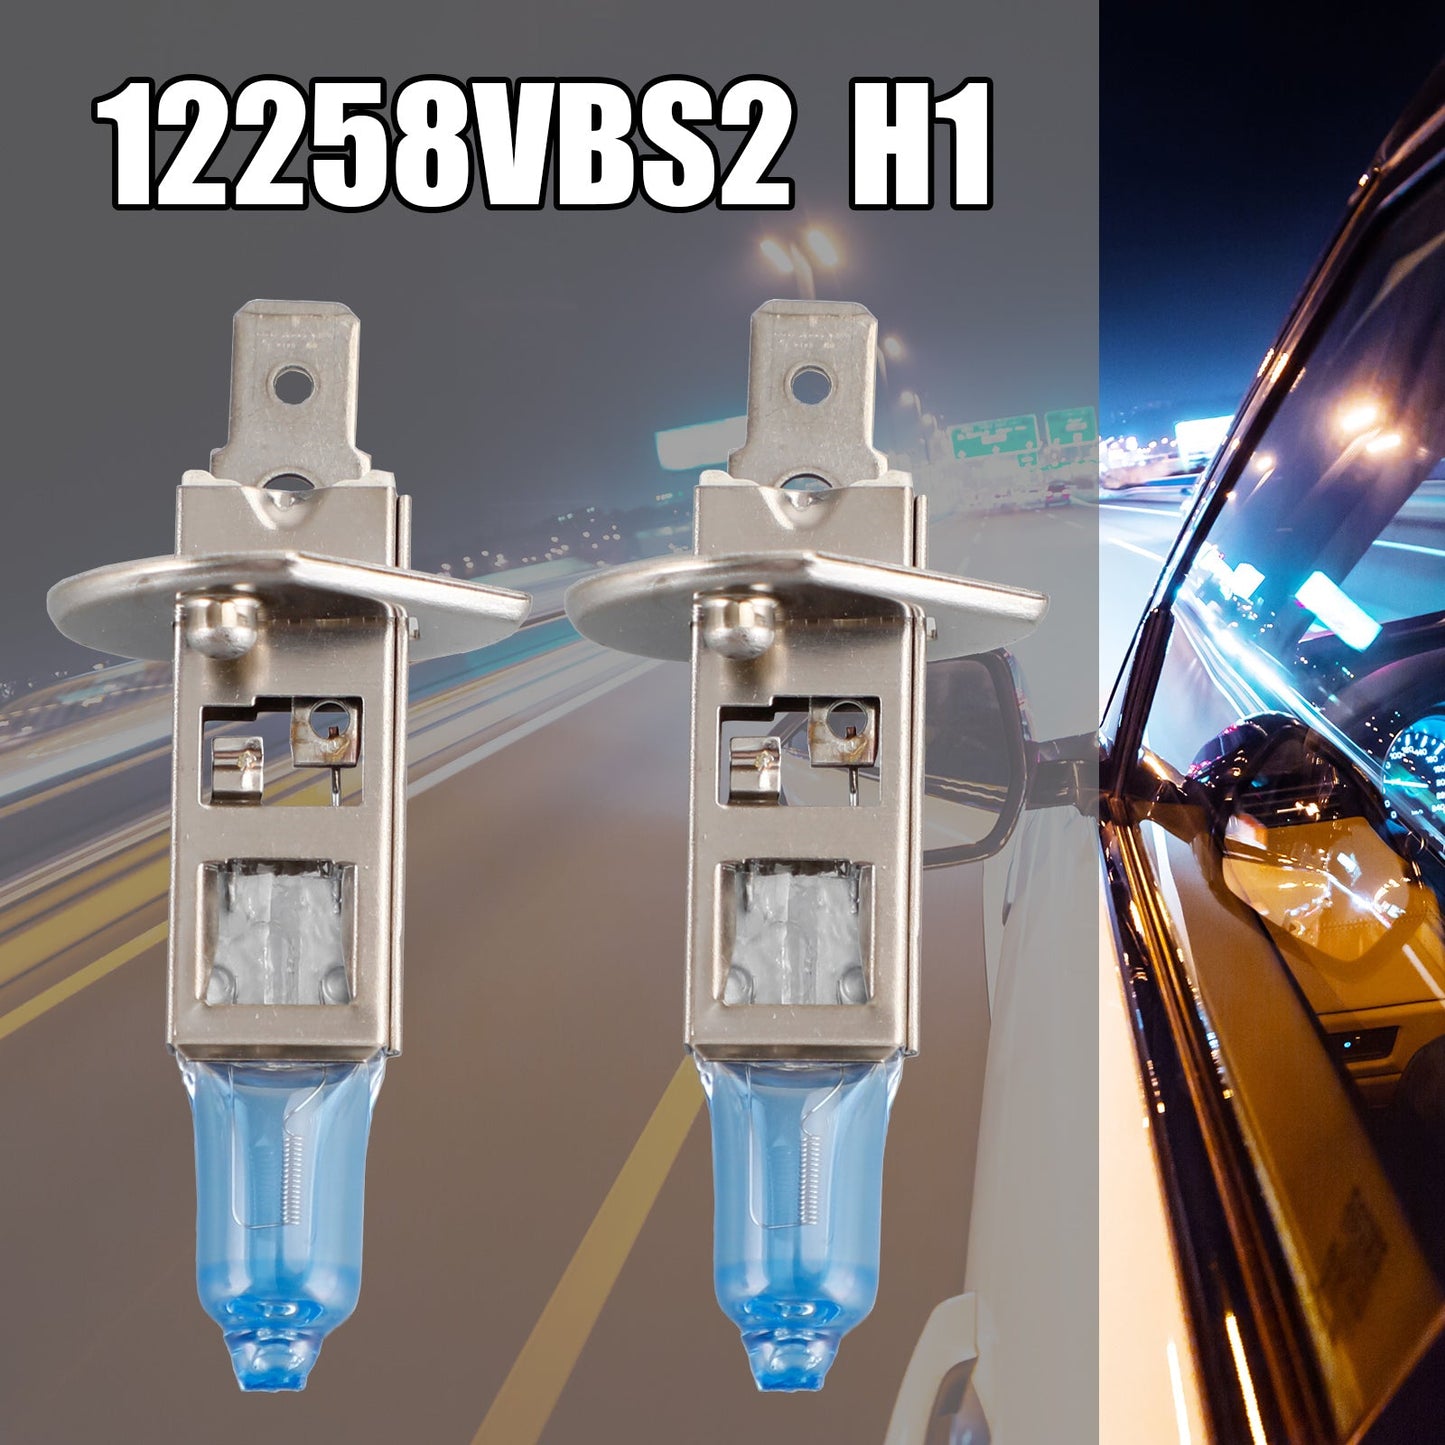 For Philips 12258VBS2 H1 New Bright White Light Headlight Halogen Lamp 12V 55W